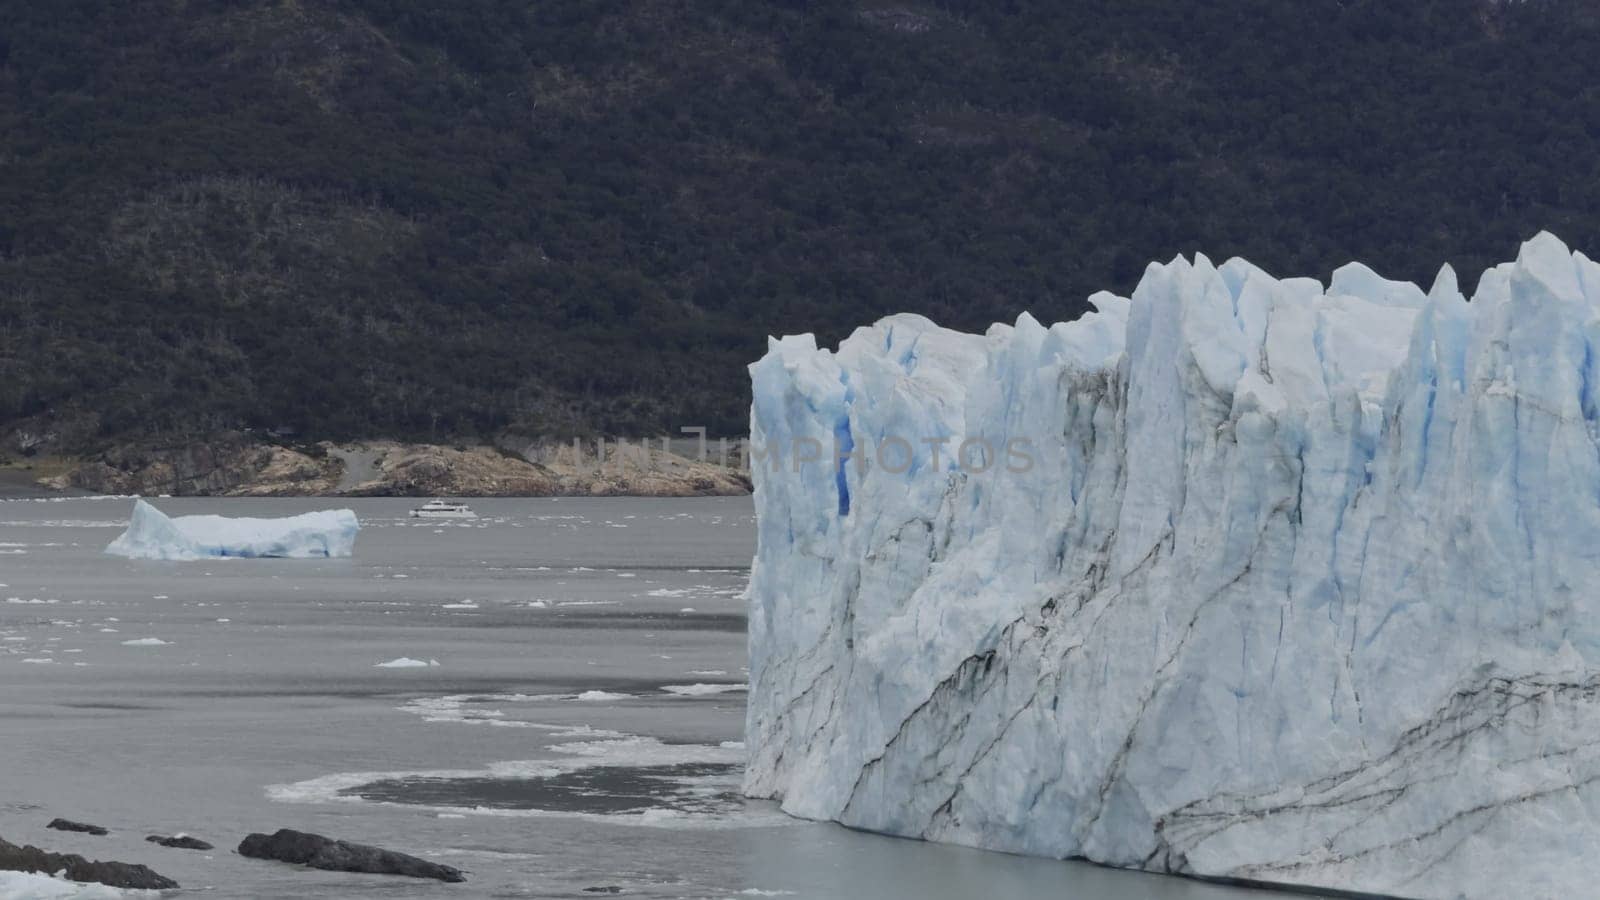 Perito Moreno Glacier s Walls with Approaching Tourist Boat by FerradalFCG